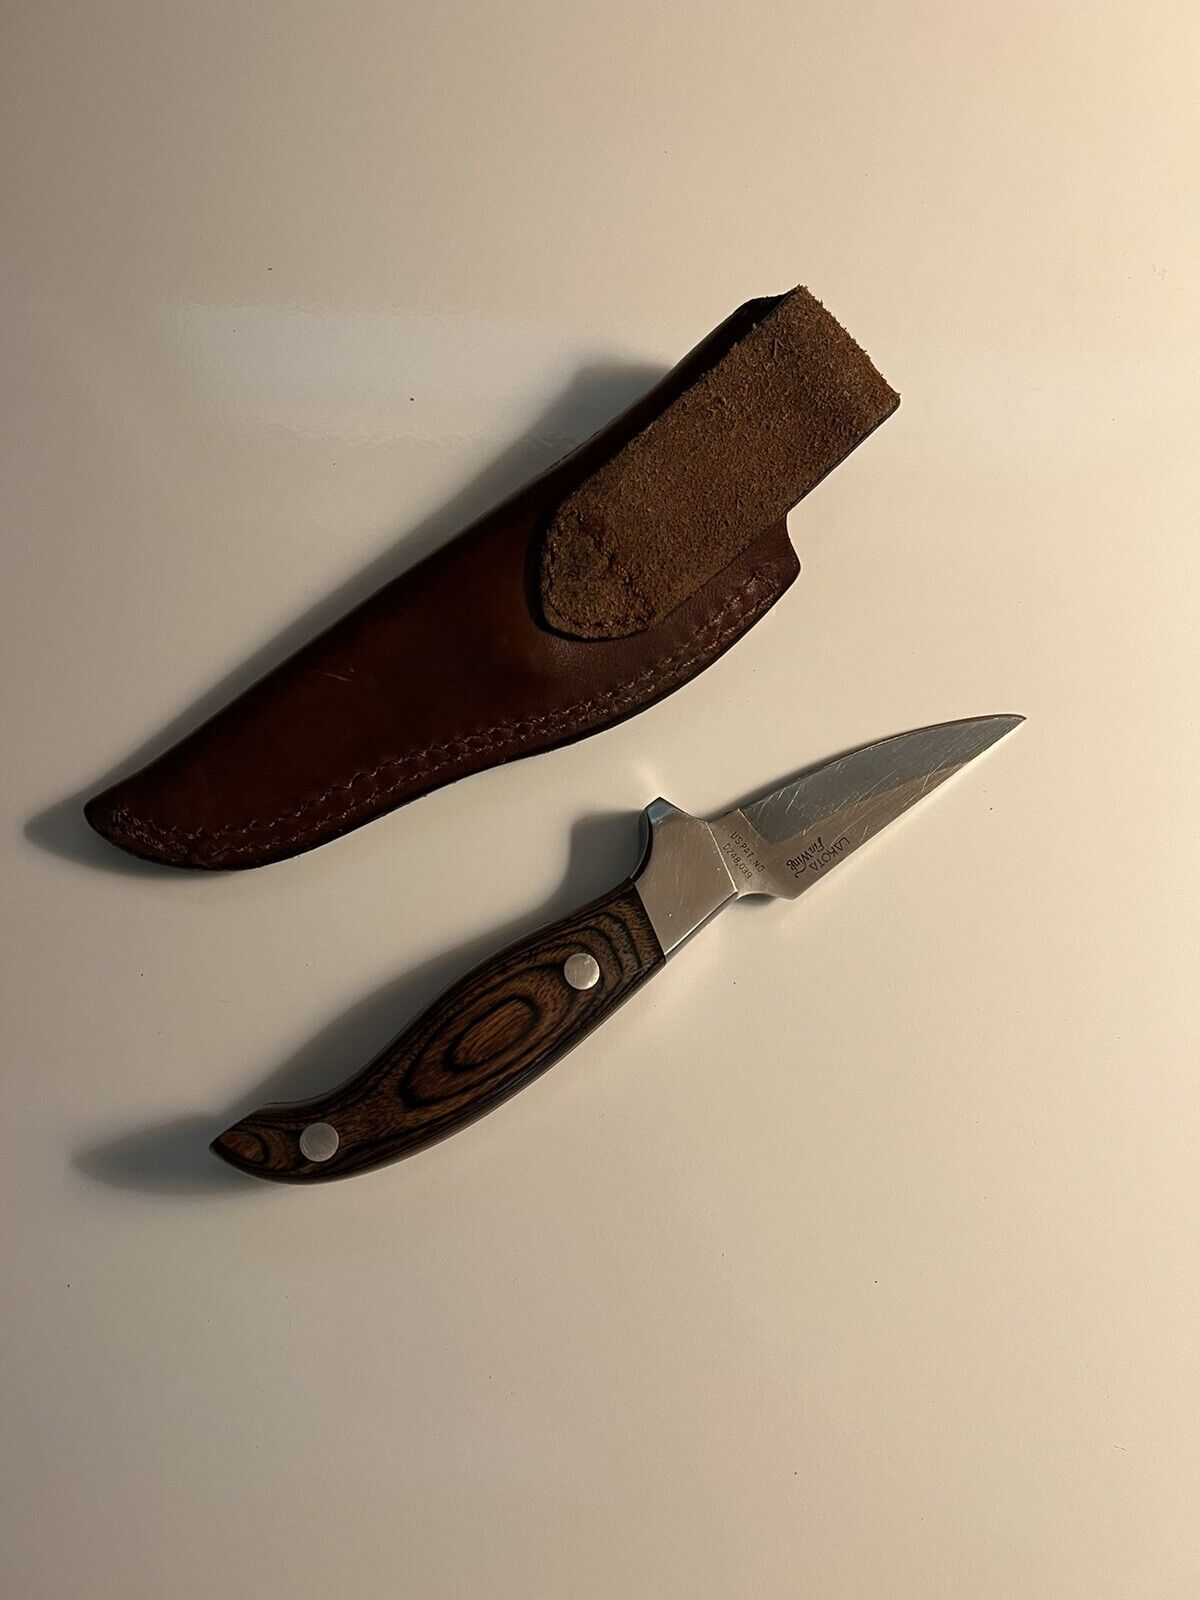 Vintage Lakota Fin Wing Hunting Knife Hand Made by Sei Kanematsu in Seki Japan